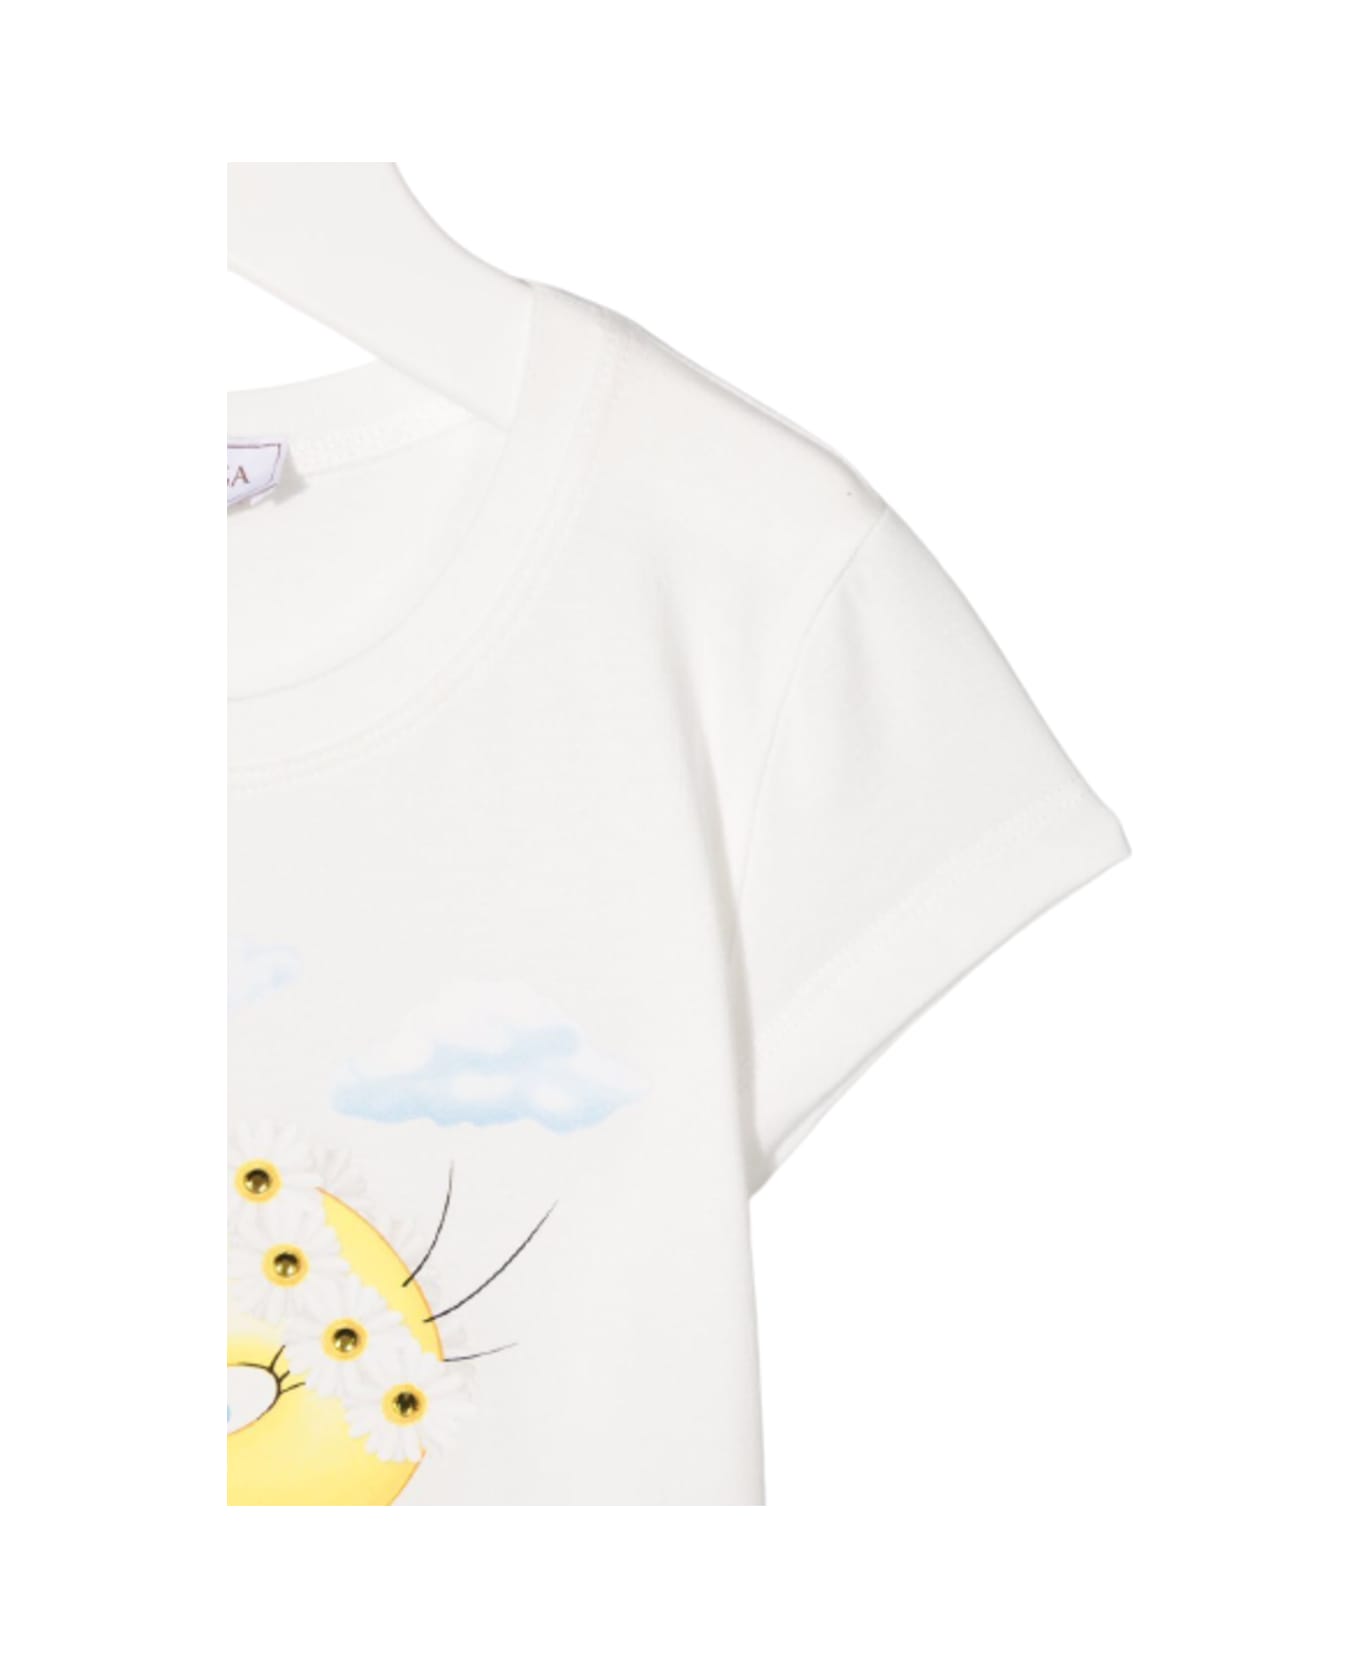 Monnalisa White Cotton T-shirt With Tweety Print - White